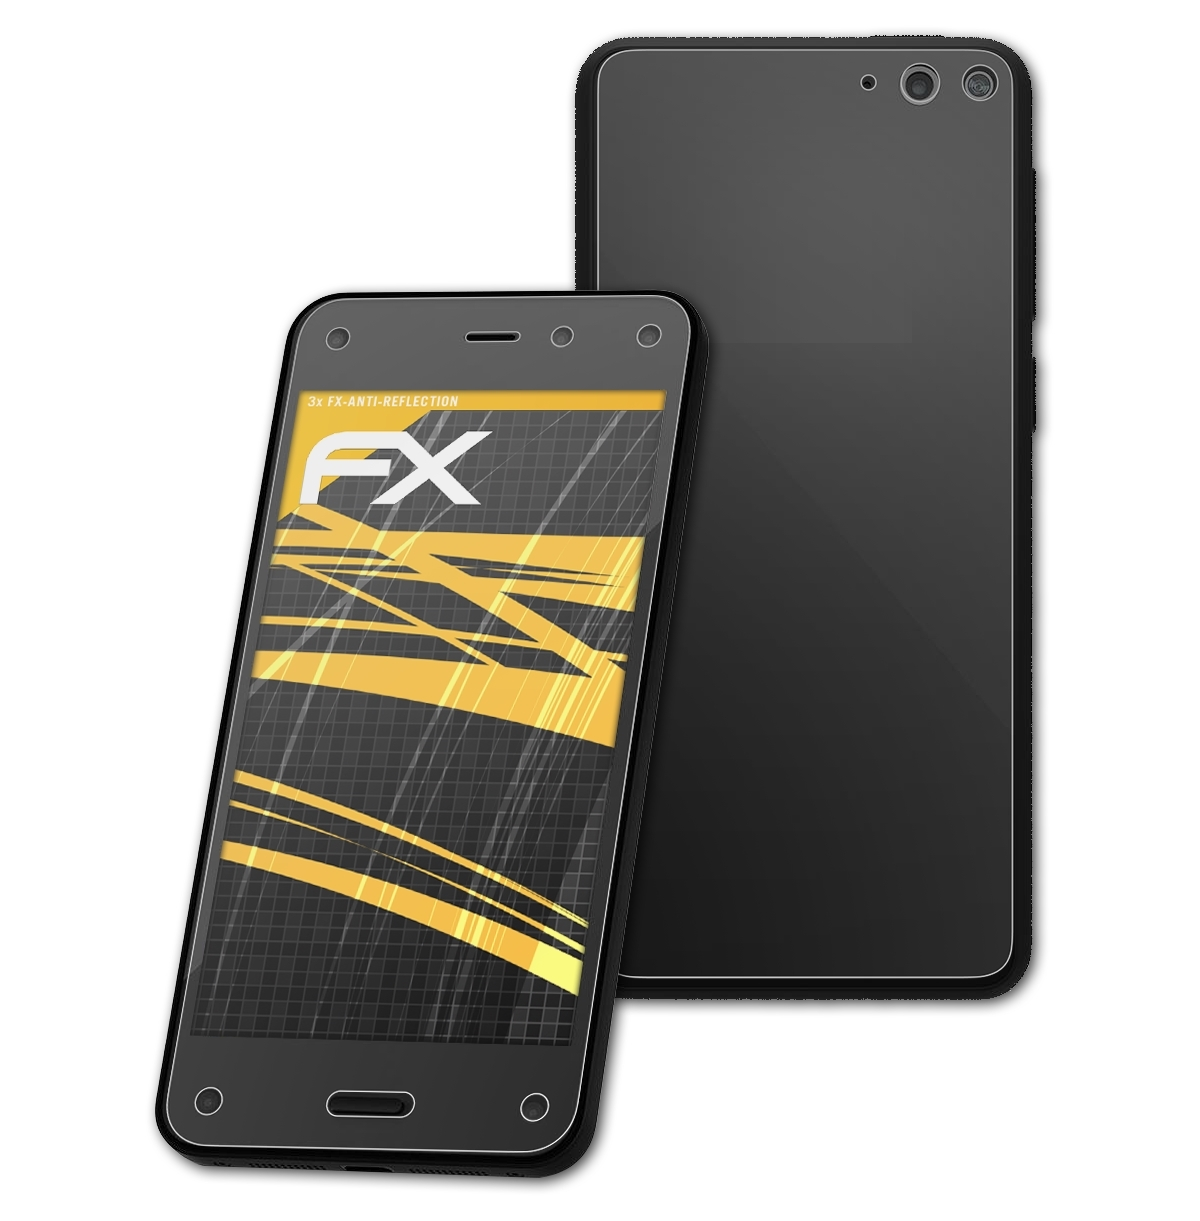 Amazon FX-Antireflex Displayschutz(für ATFOLIX Fire 3x Phone)